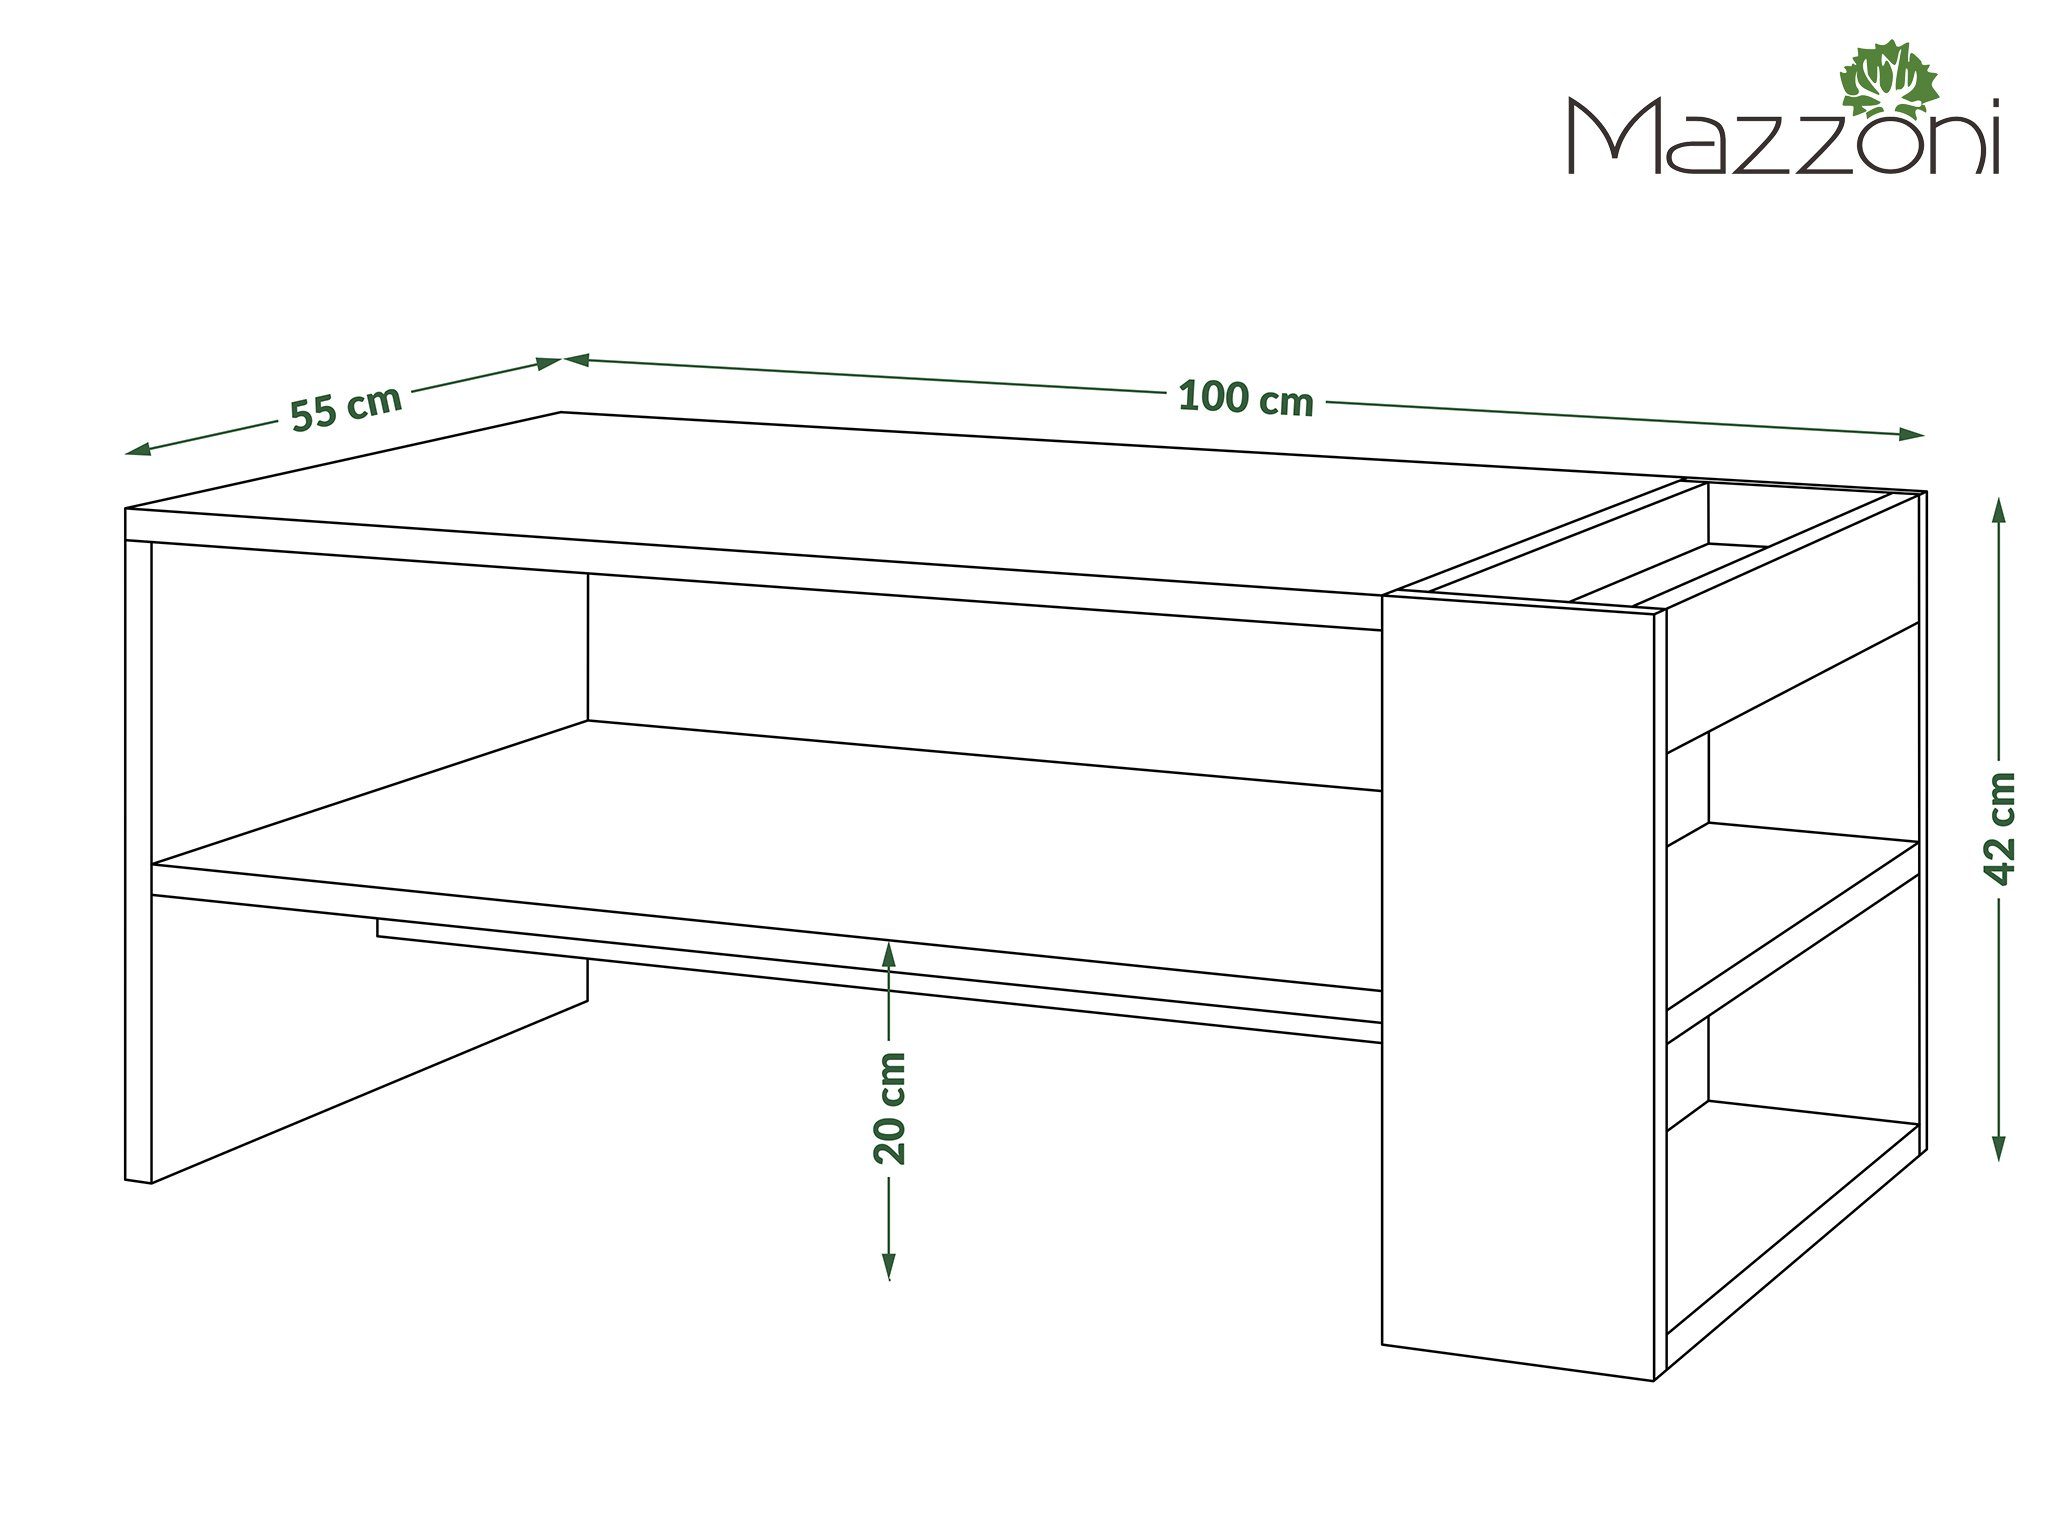 Couchtisch designimpex Ablagefläche / mit Couchtisch matt Nefri Beton Weiß Wohnzimmertisch Tisch Design